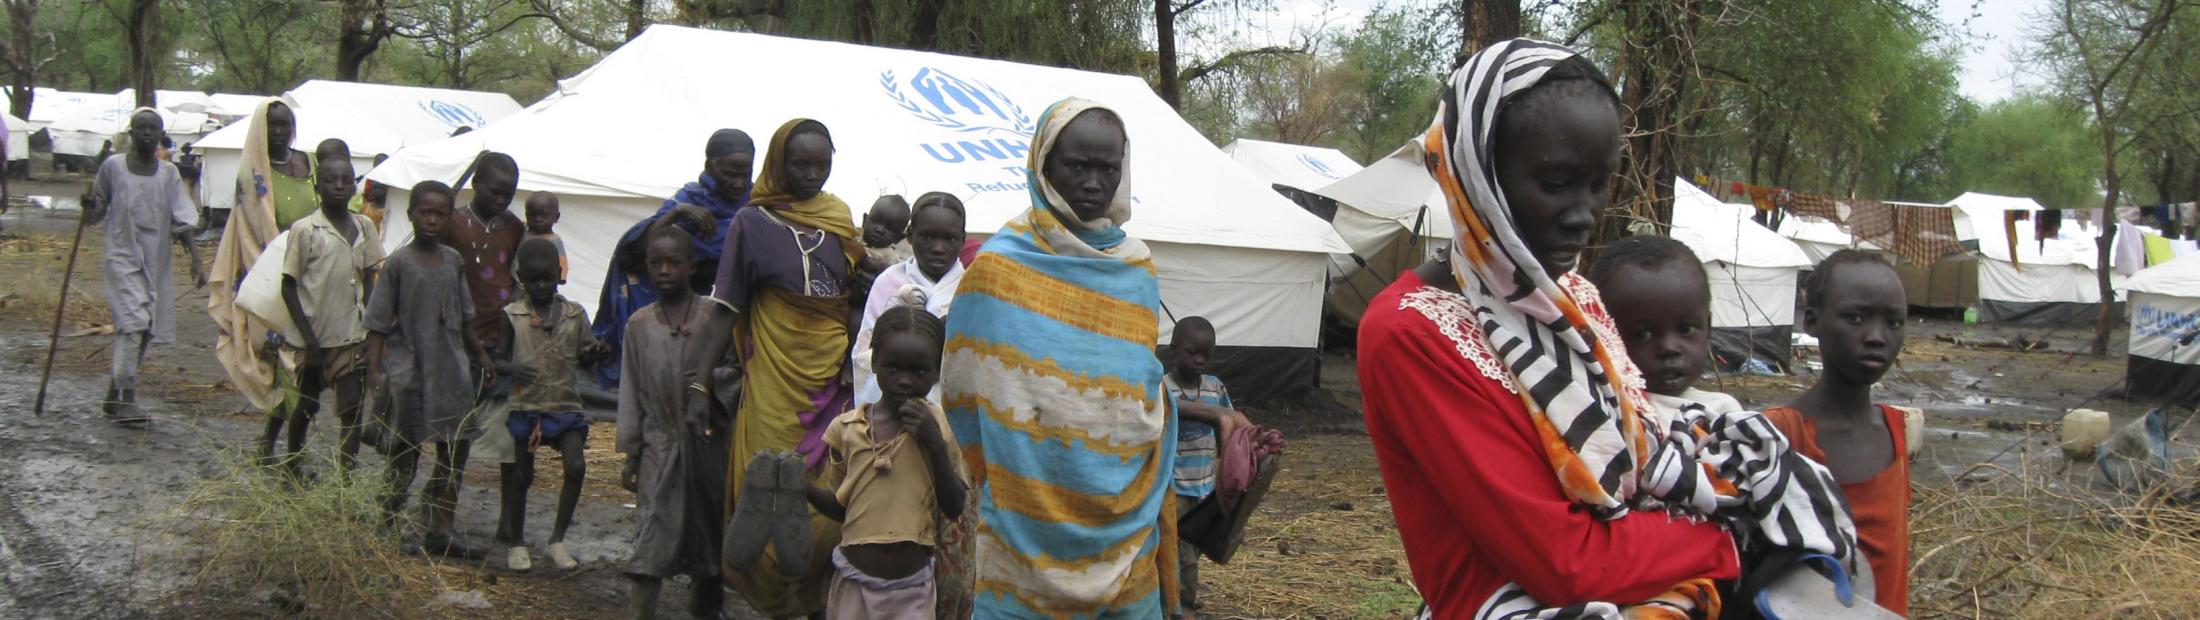 ACNUR abrirá un nuevo campo de refugiados en Sudán del Sur